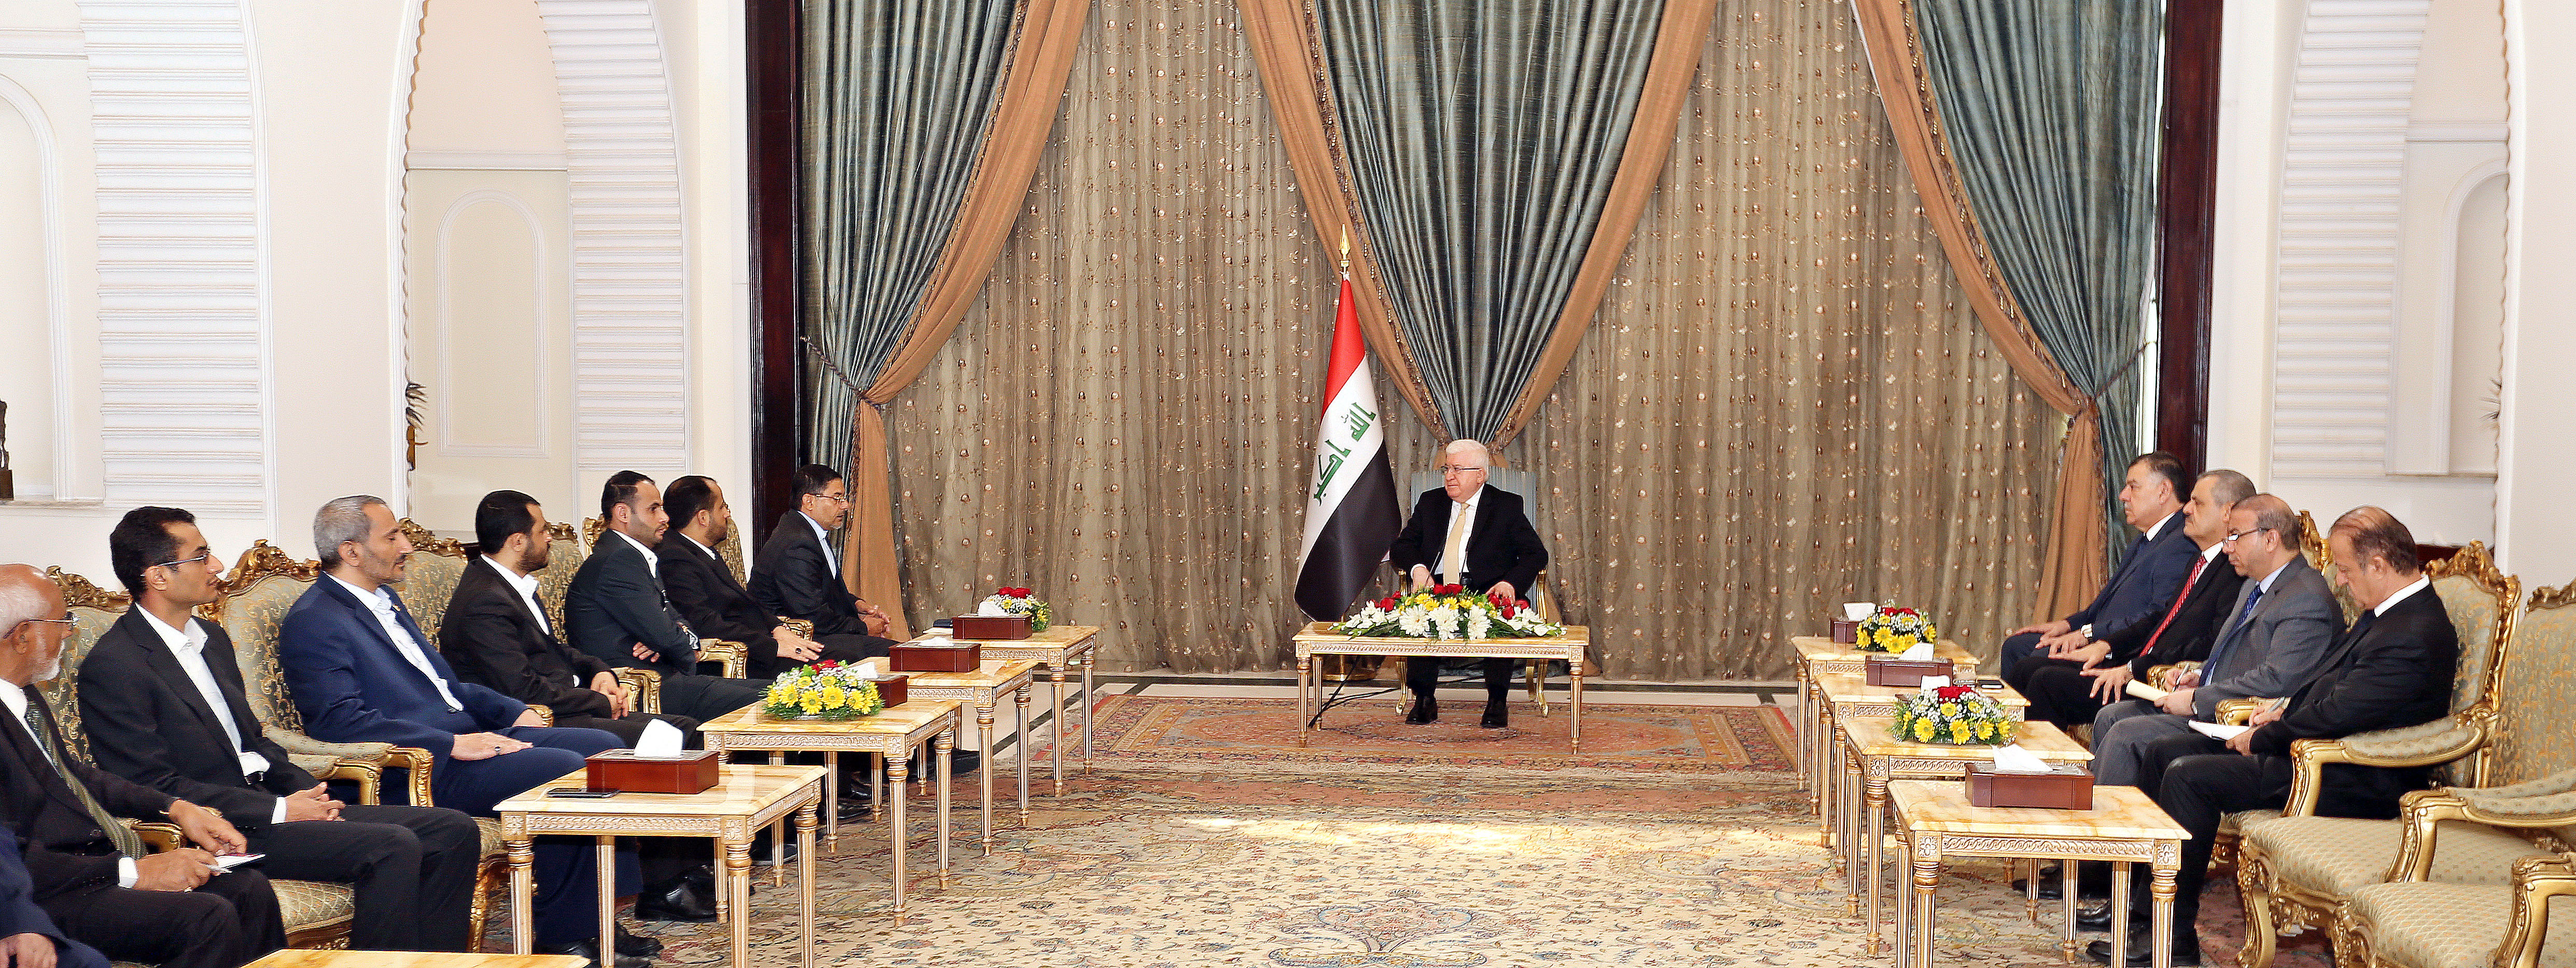 ما حقيقة ما يُرَوَج له عن عدم إعتراف العراق بالمجلس السياسي الأعلى؟